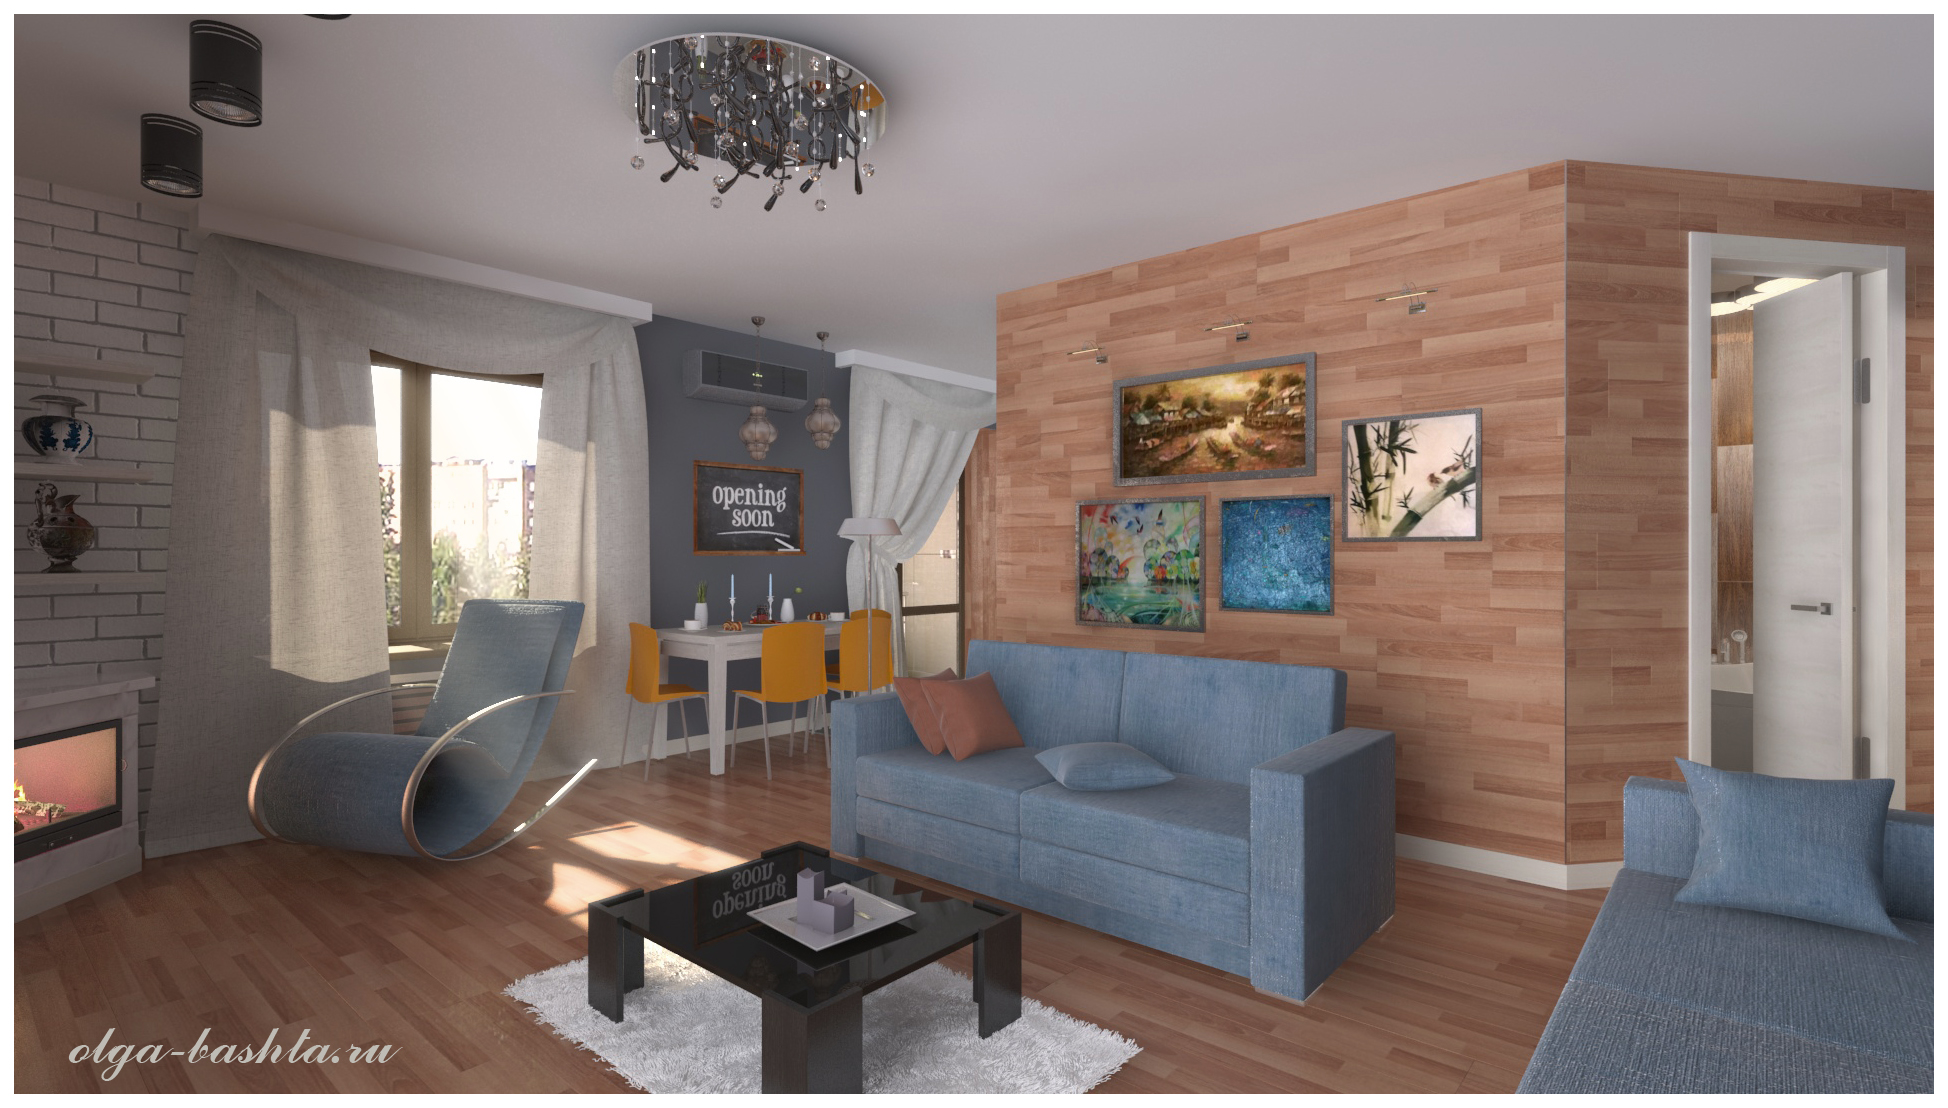 Wohnzimmer mit Kamin in 3d max vray 3.0 Bild